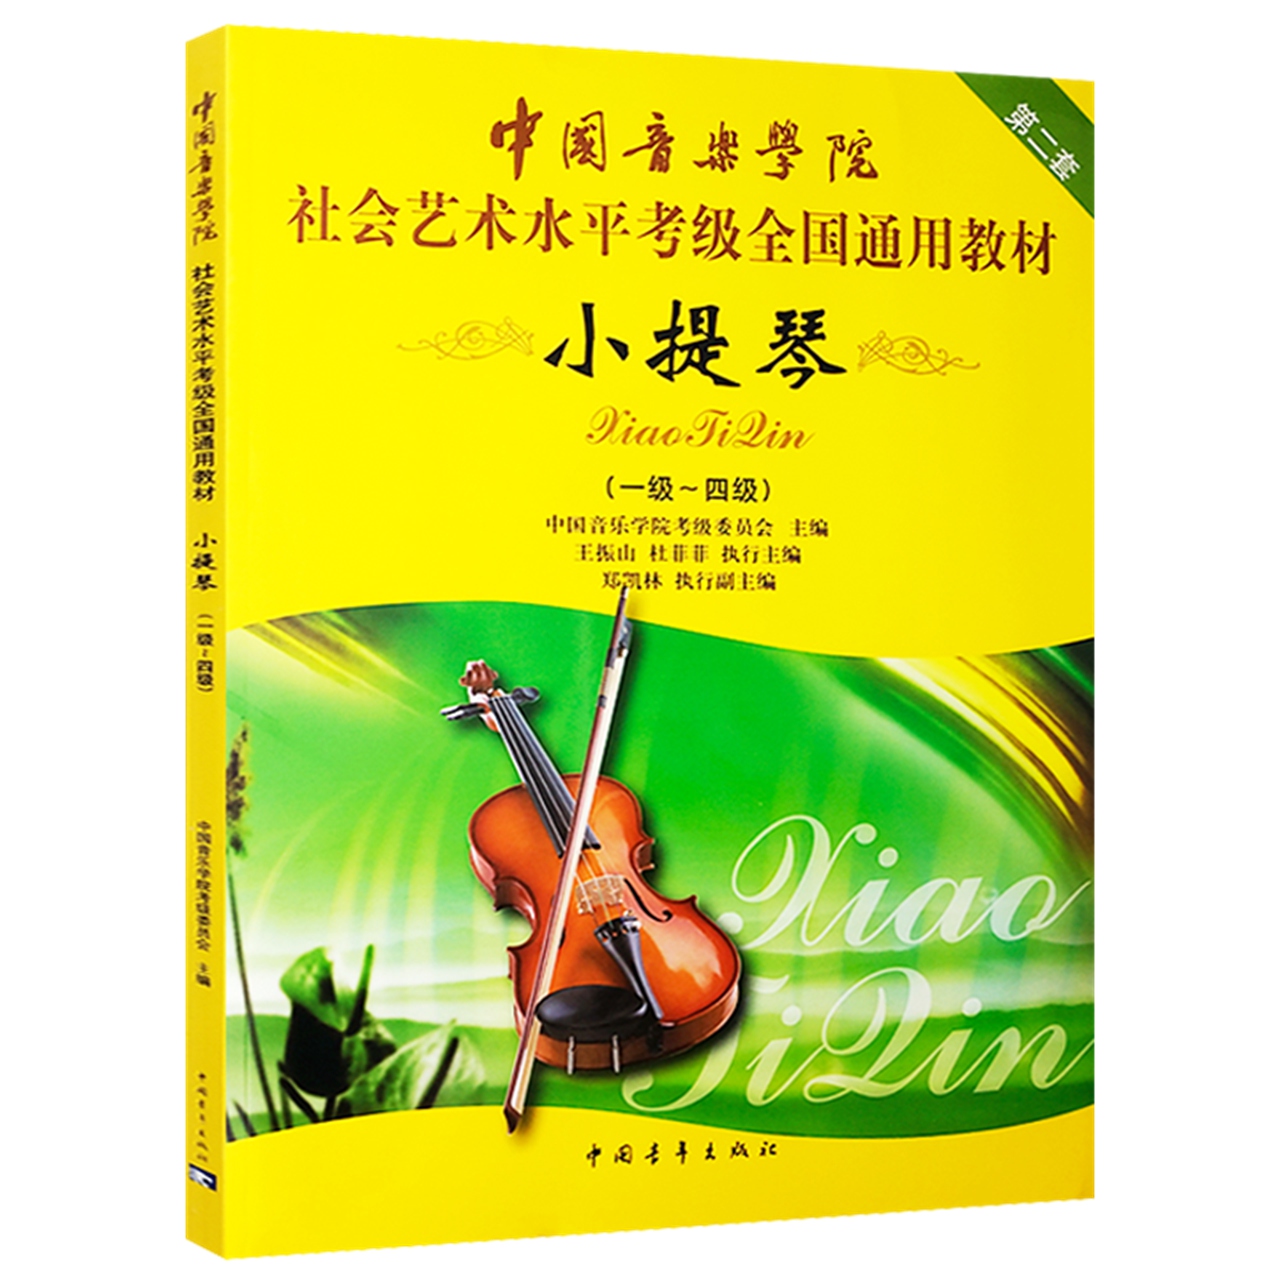 小提琴1级~4级社会艺术水平考级全国通用教材乐理新华书店音乐